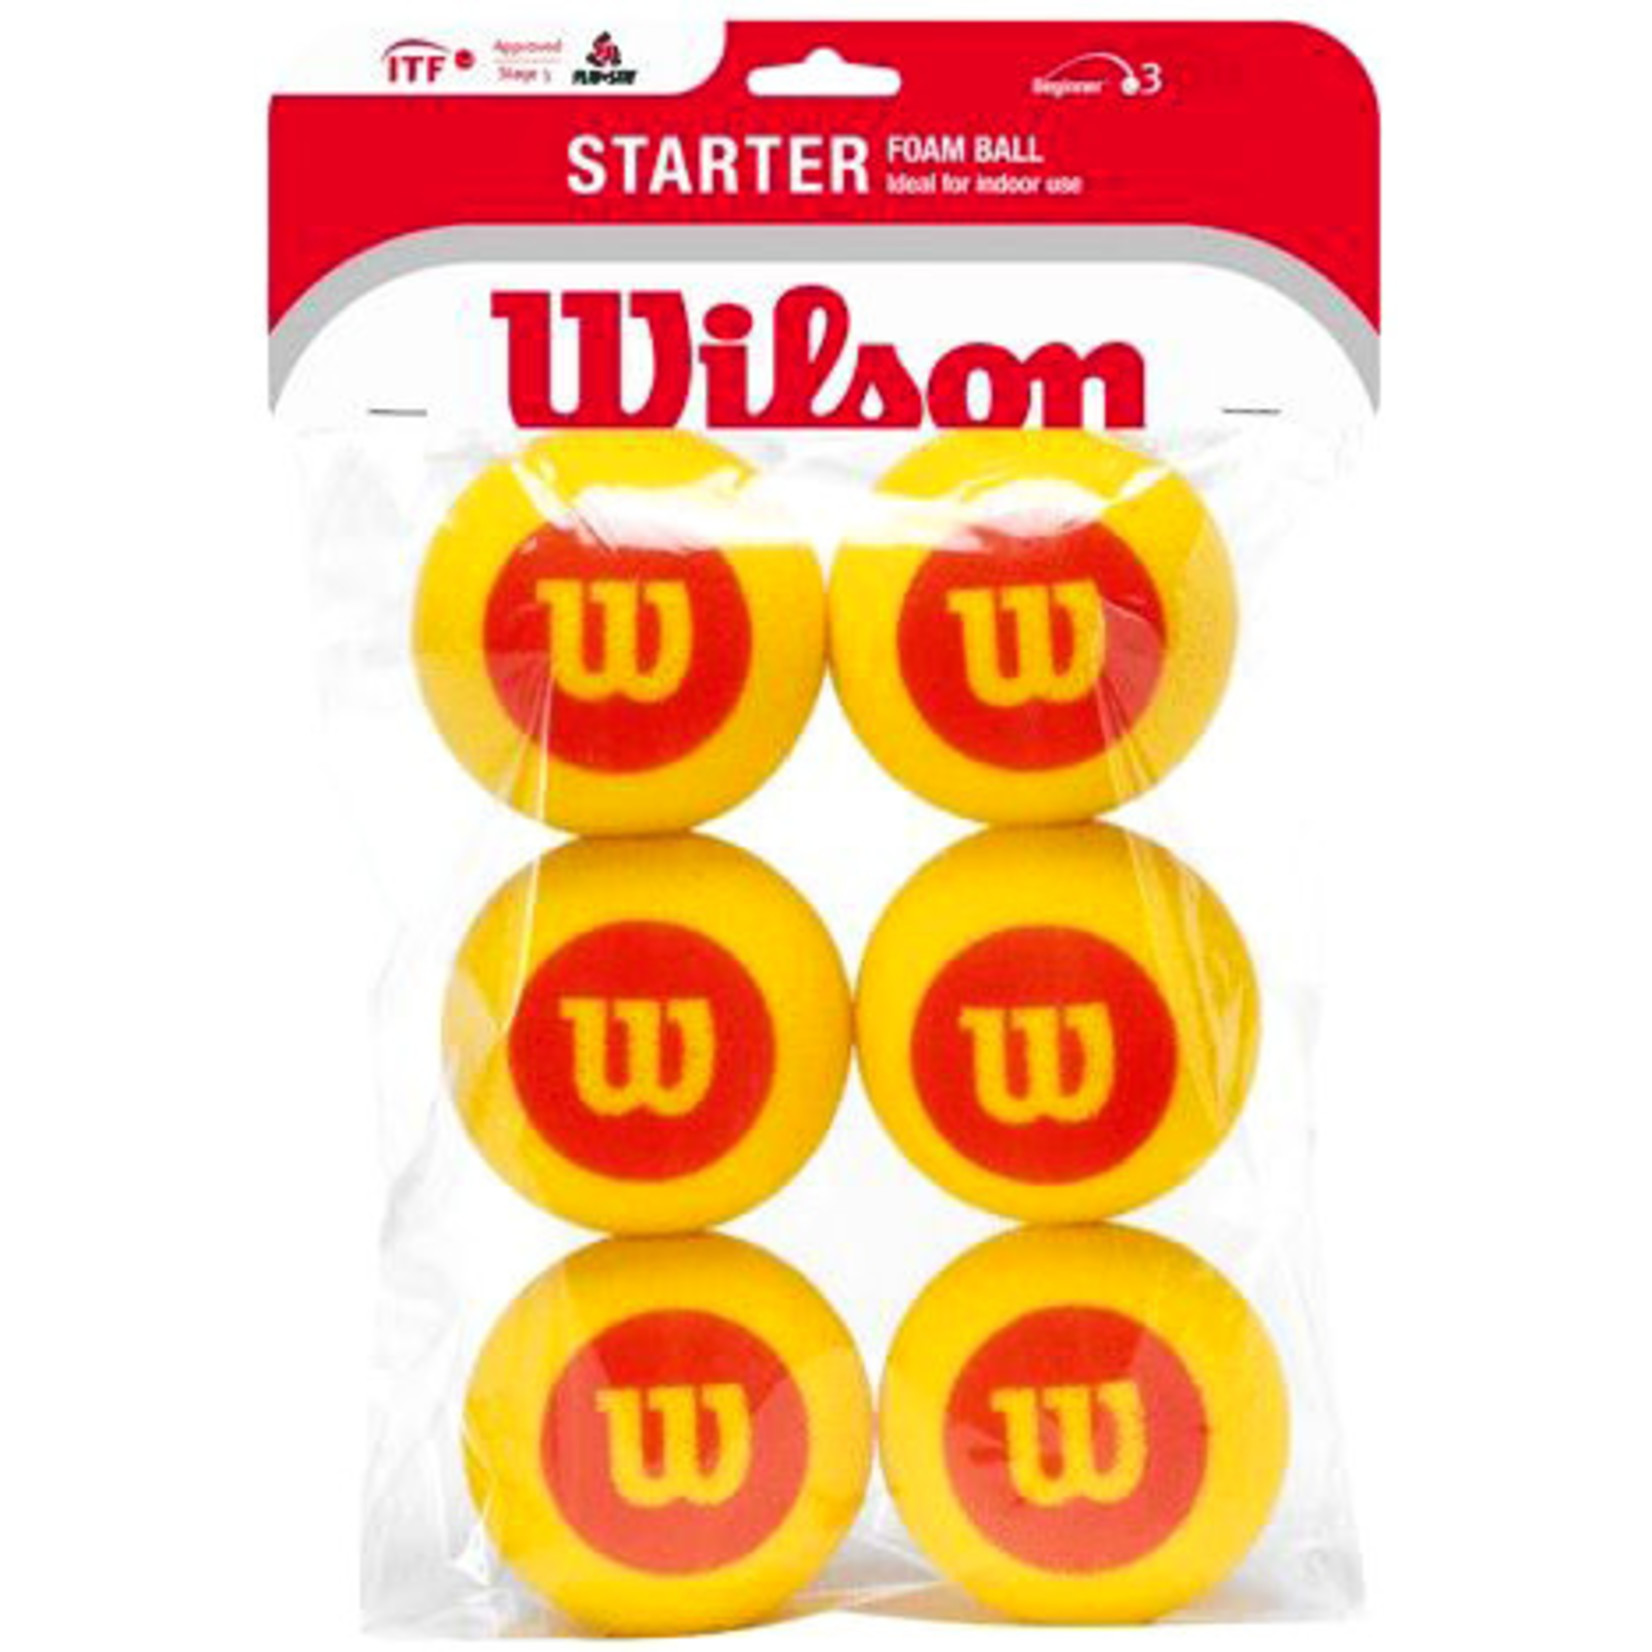 Wilson Wilson TB Starter Foam Ball 6B